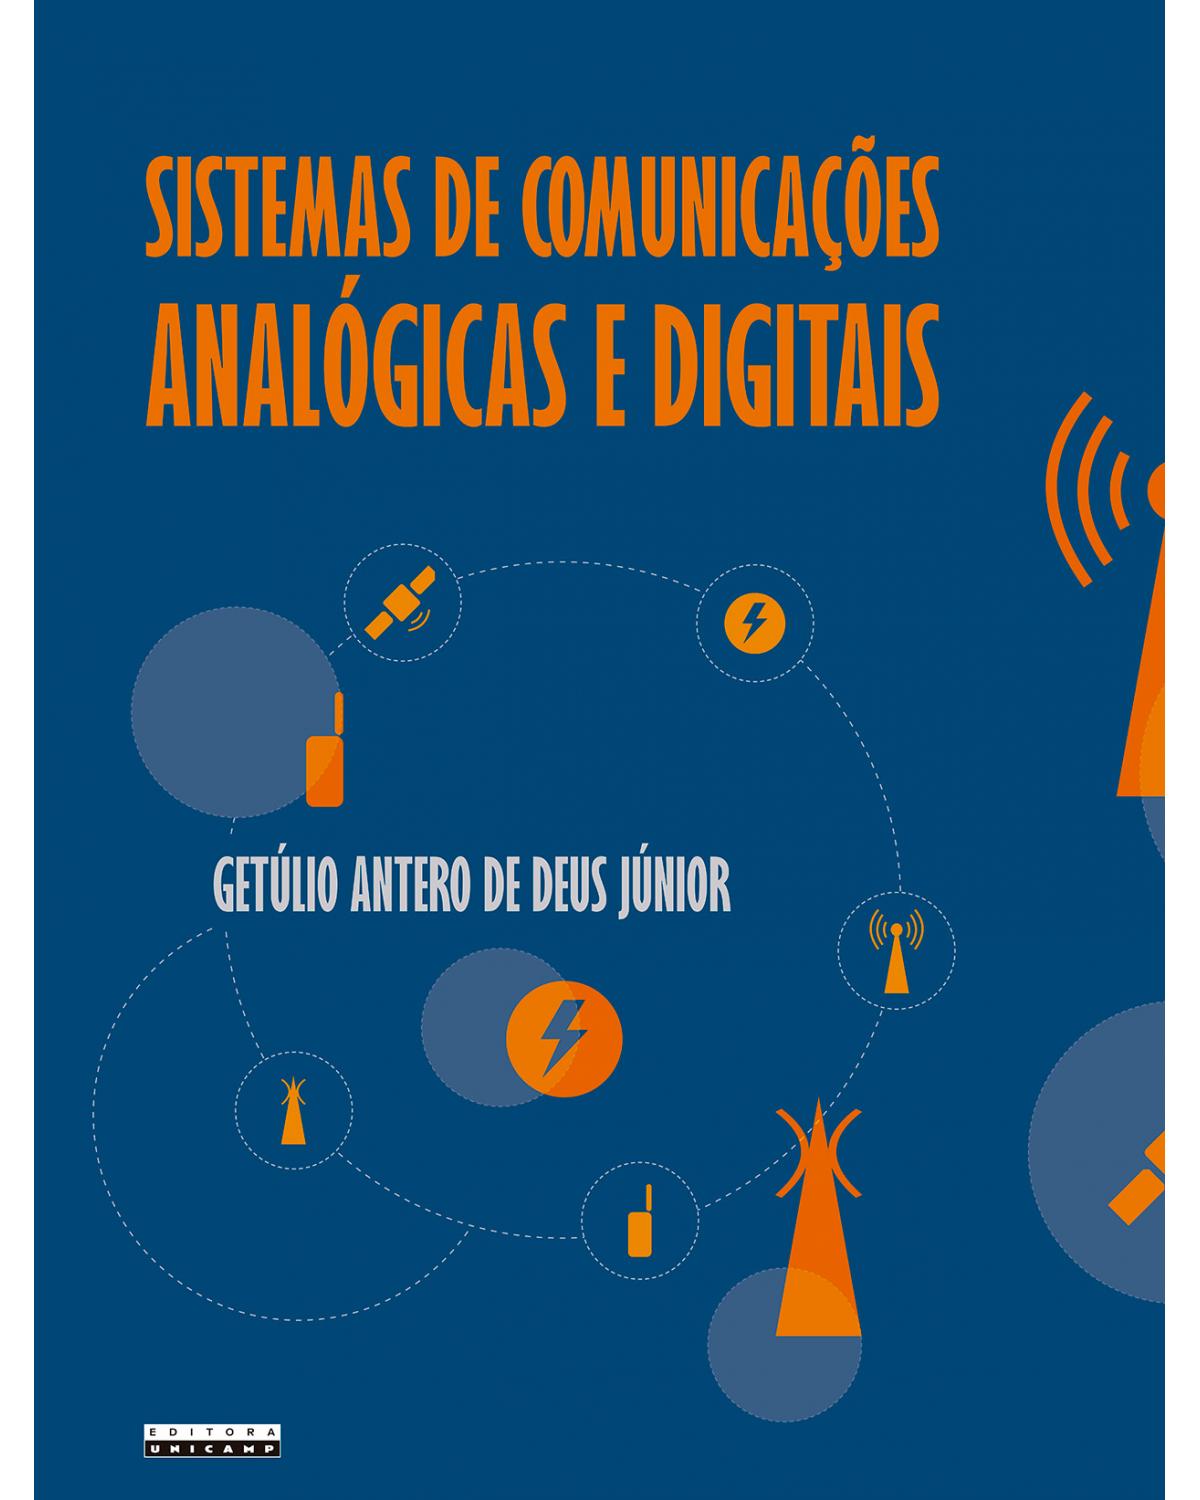 Sistemas de comunicações analógicas e digitais - uma nova abordagem por meio da aprendizagem baseada em problemas e da aprendizagem baseada em projetos - 1ª Edição | 2022